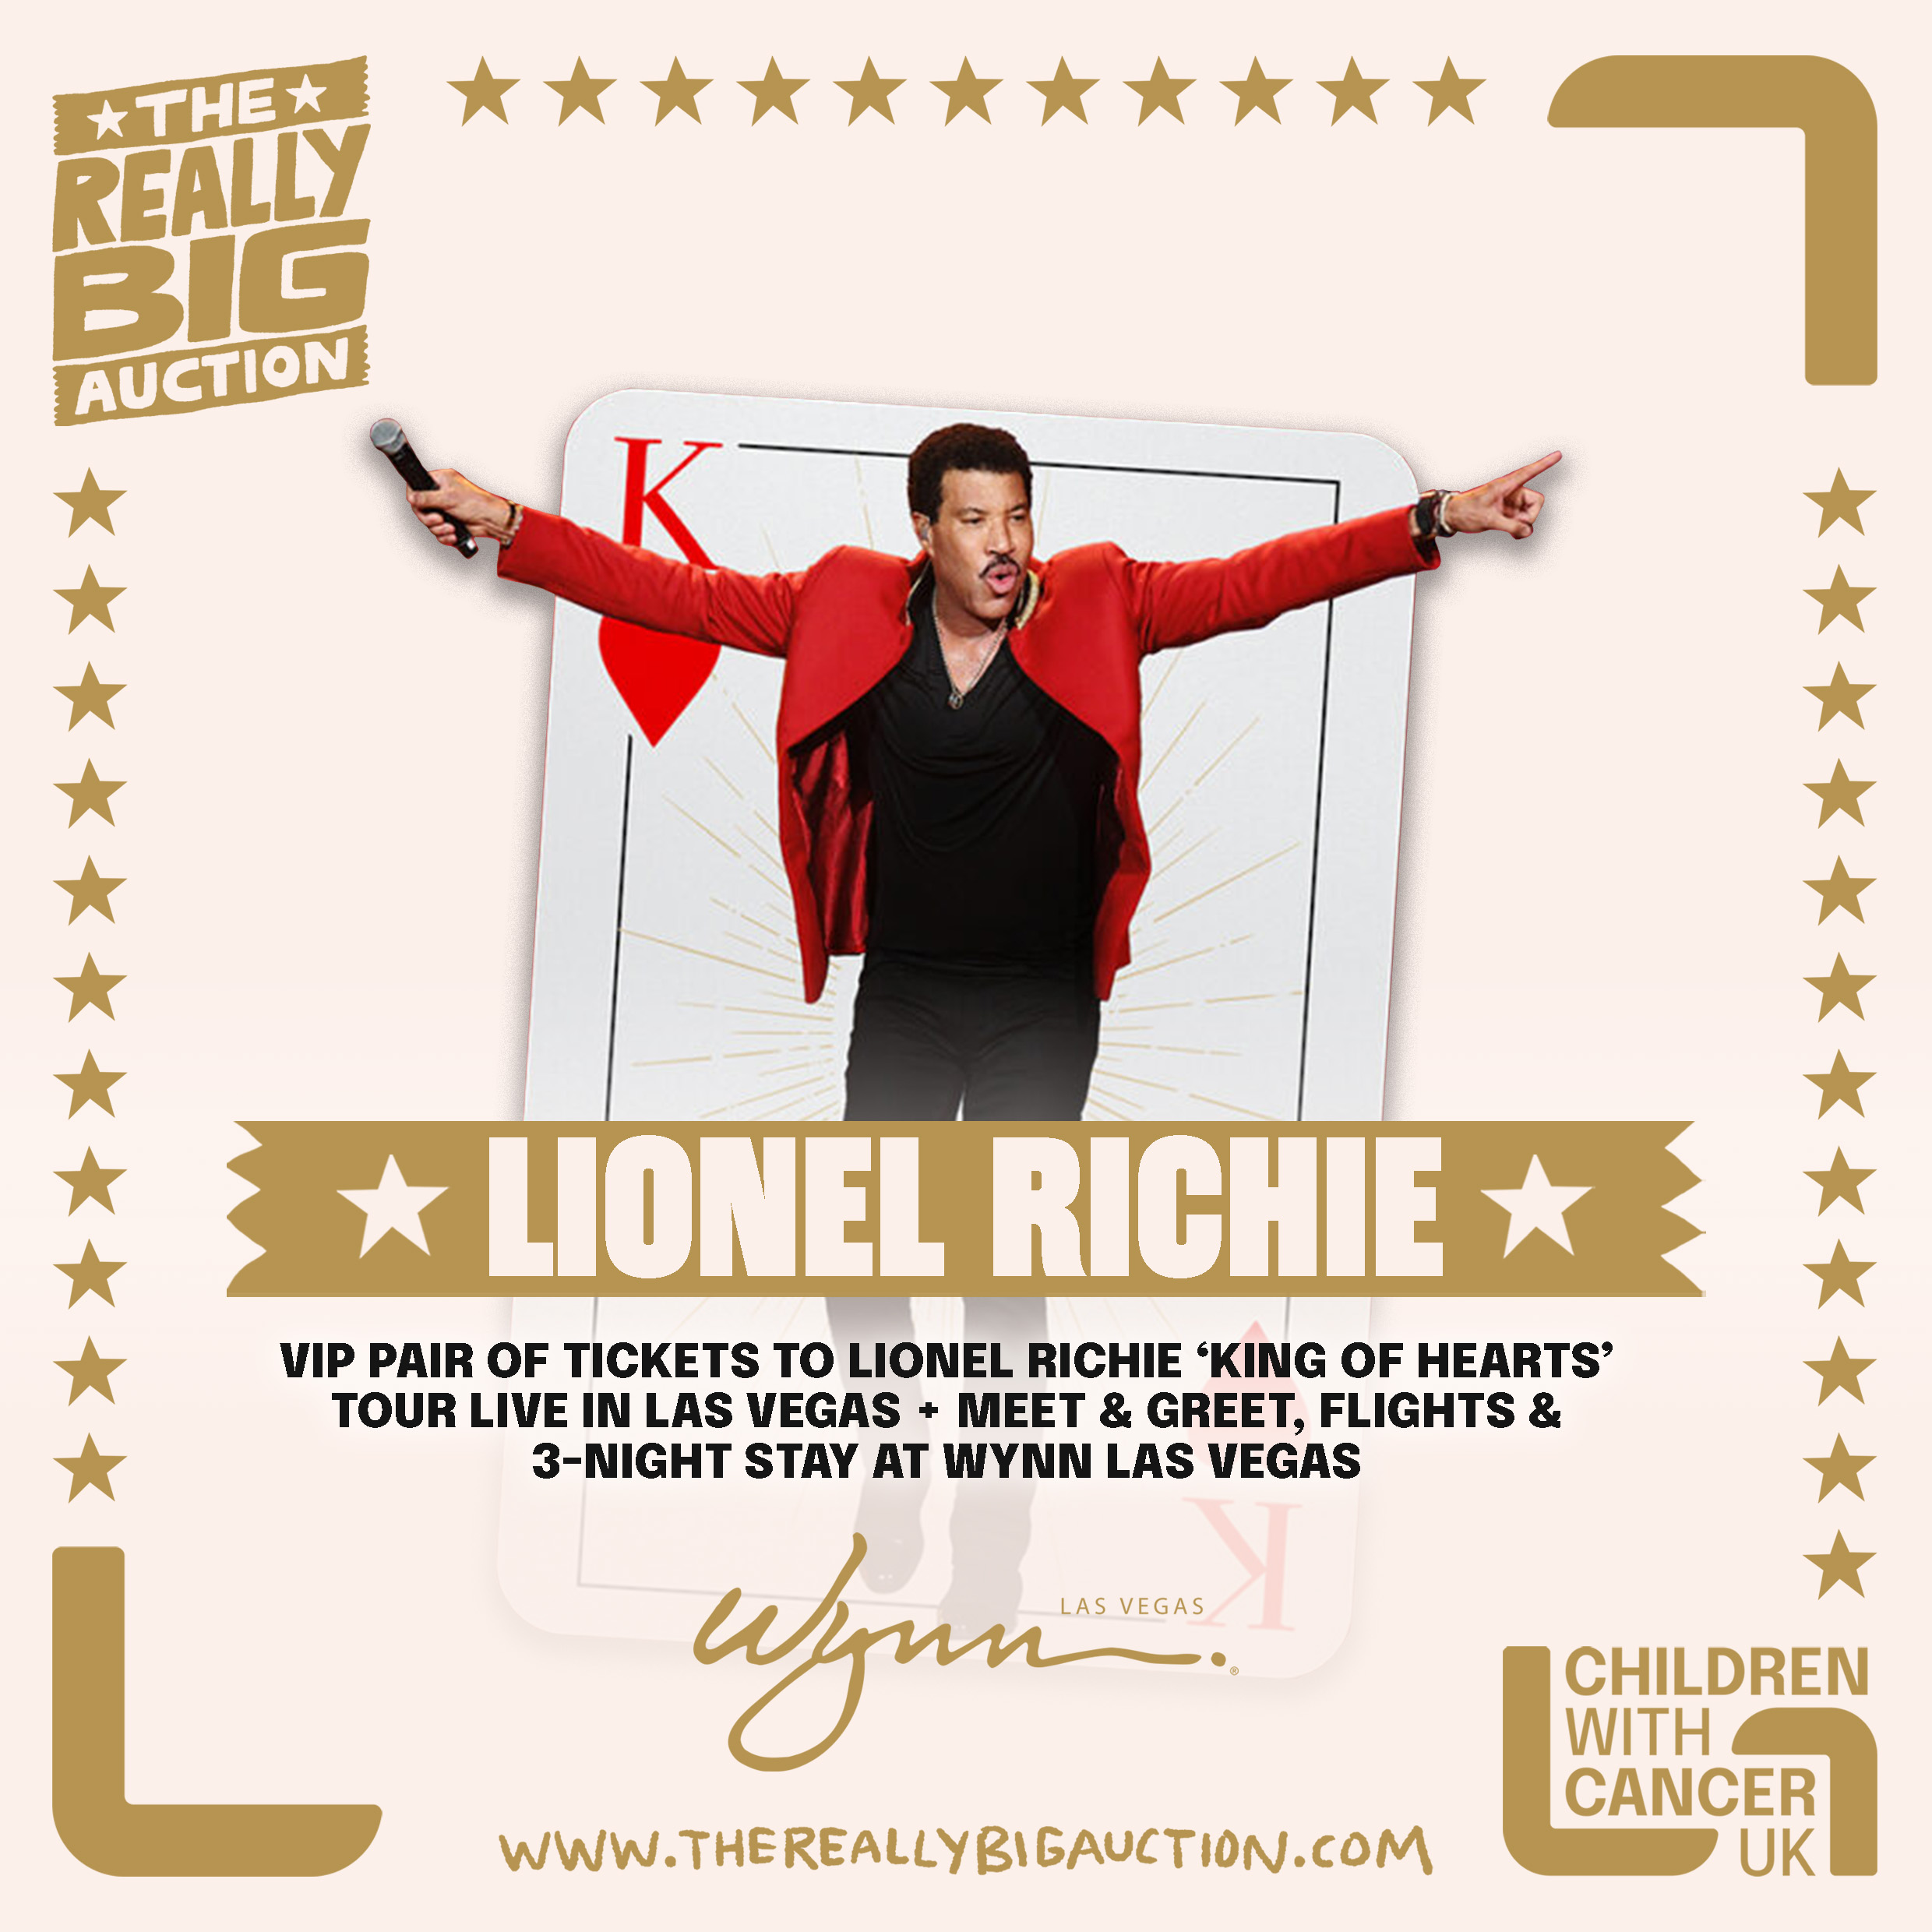 Lionel Richie big auction